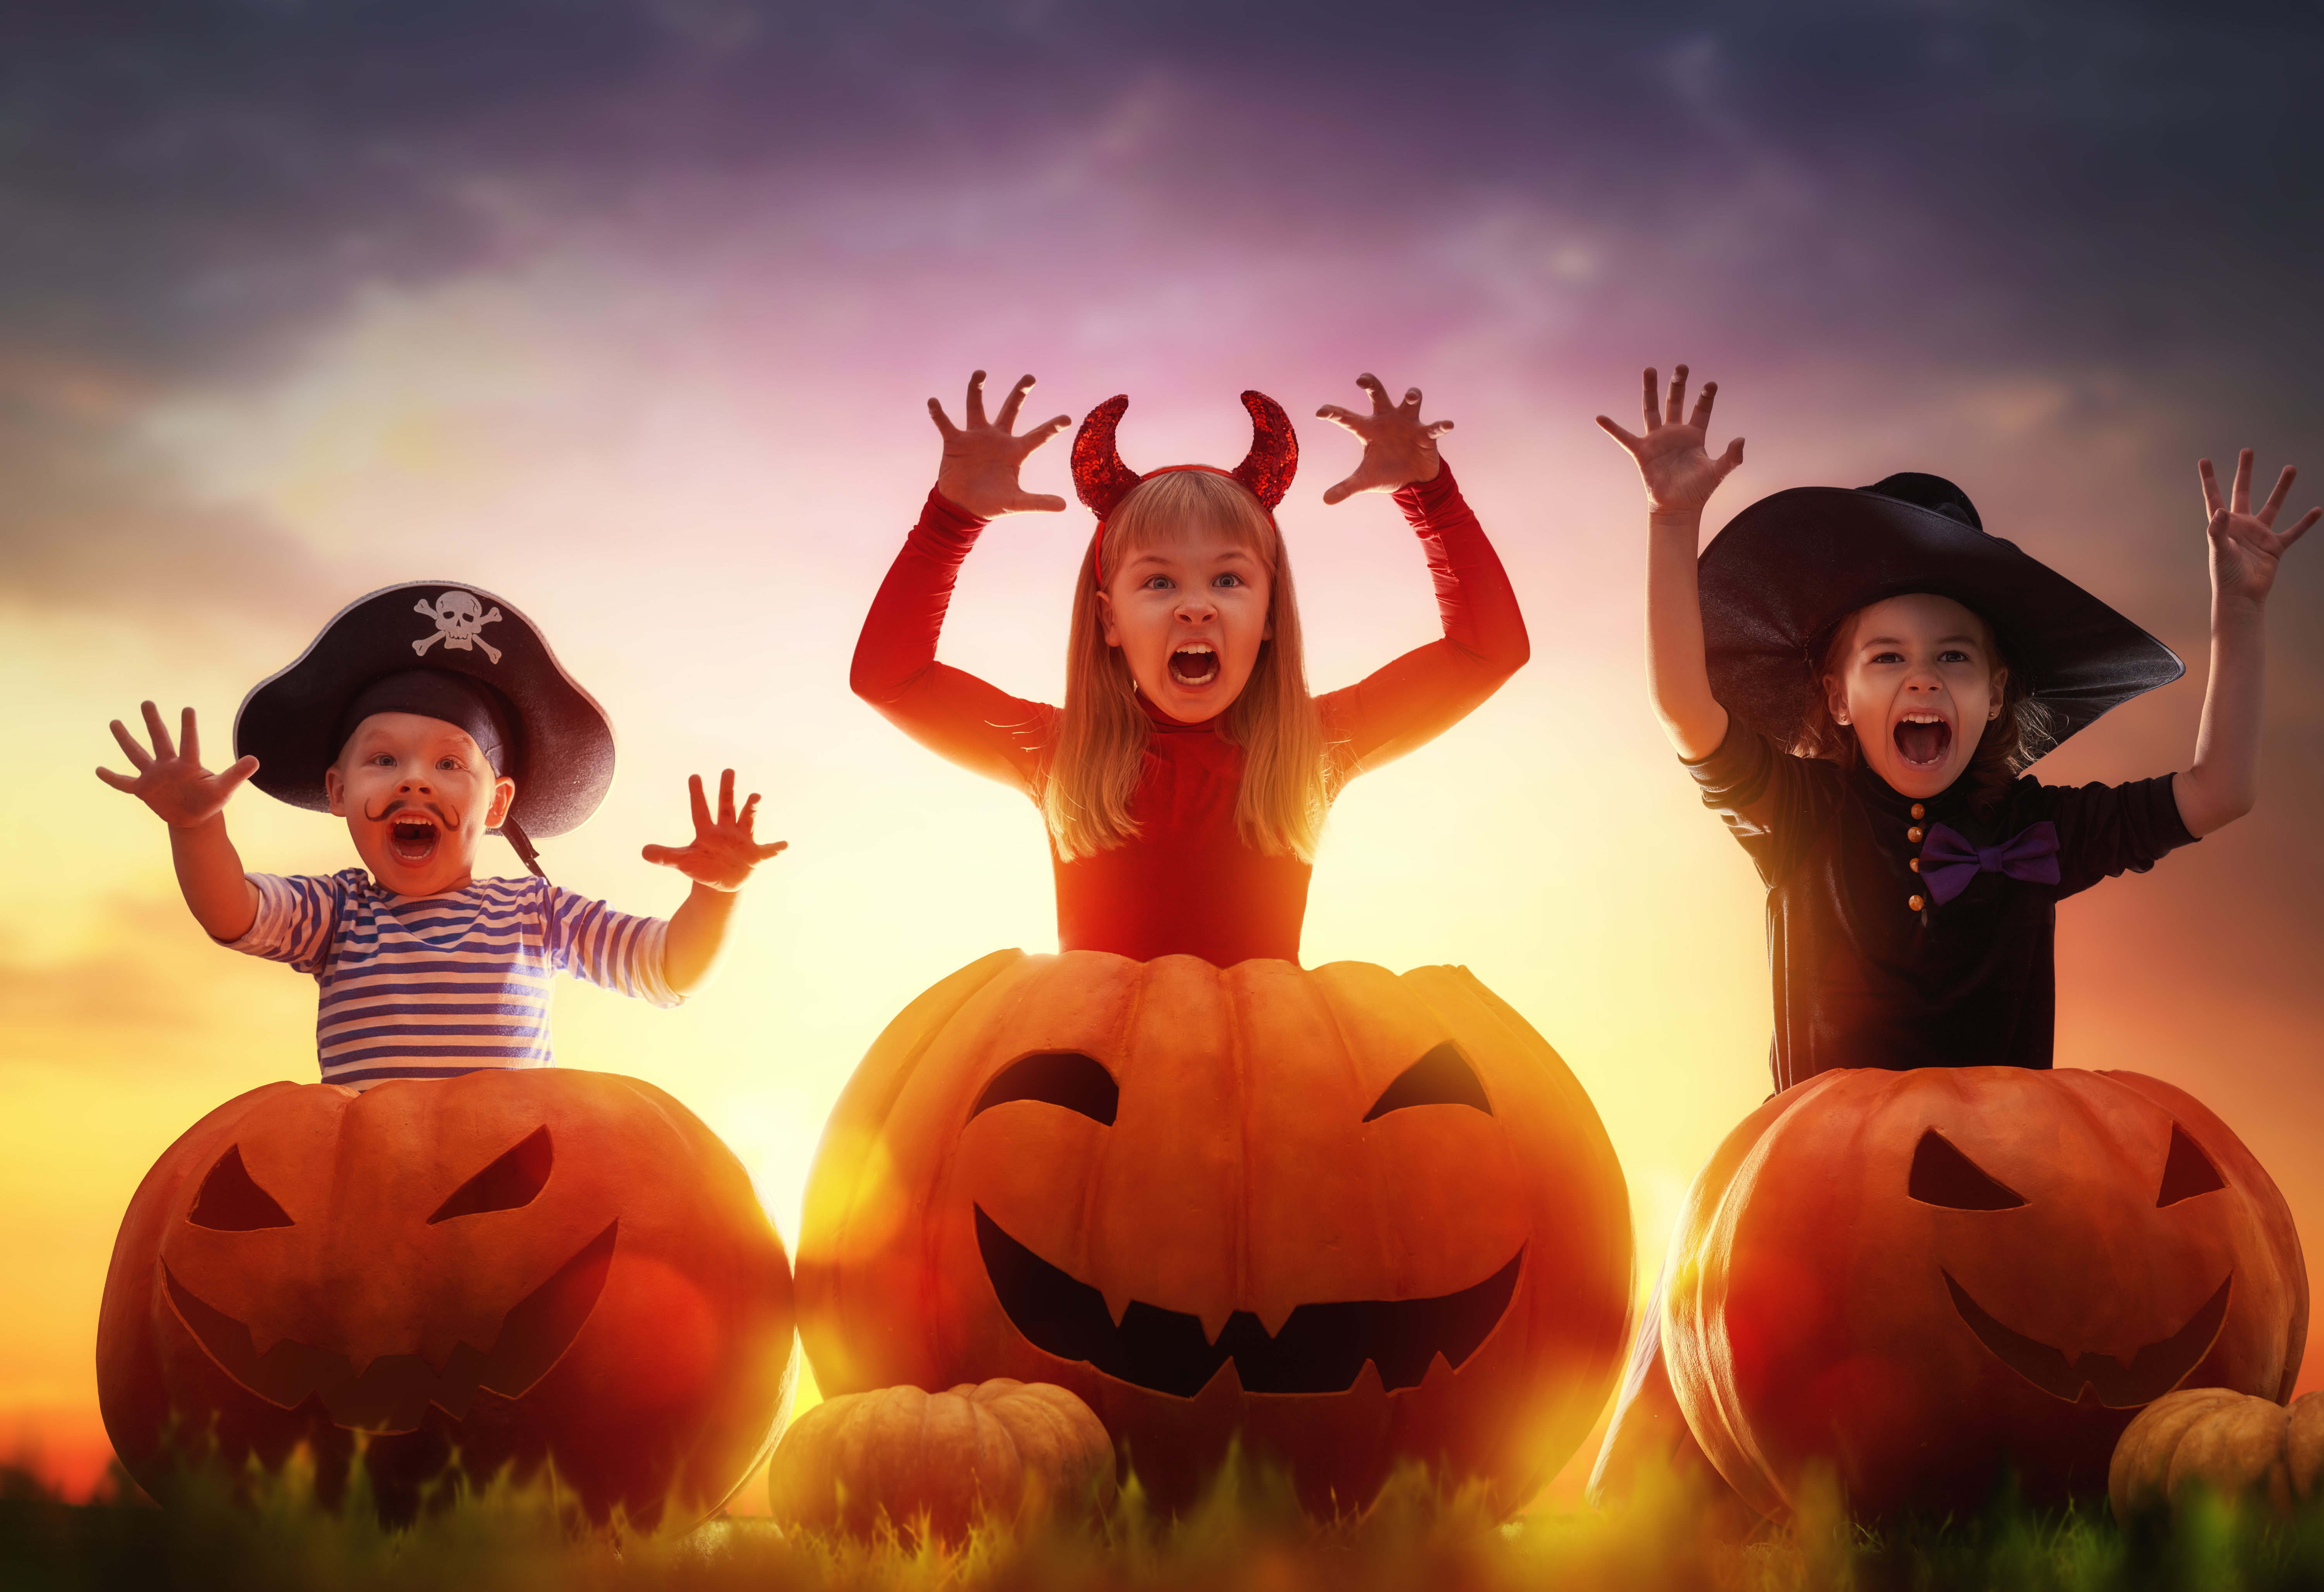 Children in halloween costumes with pumpkins